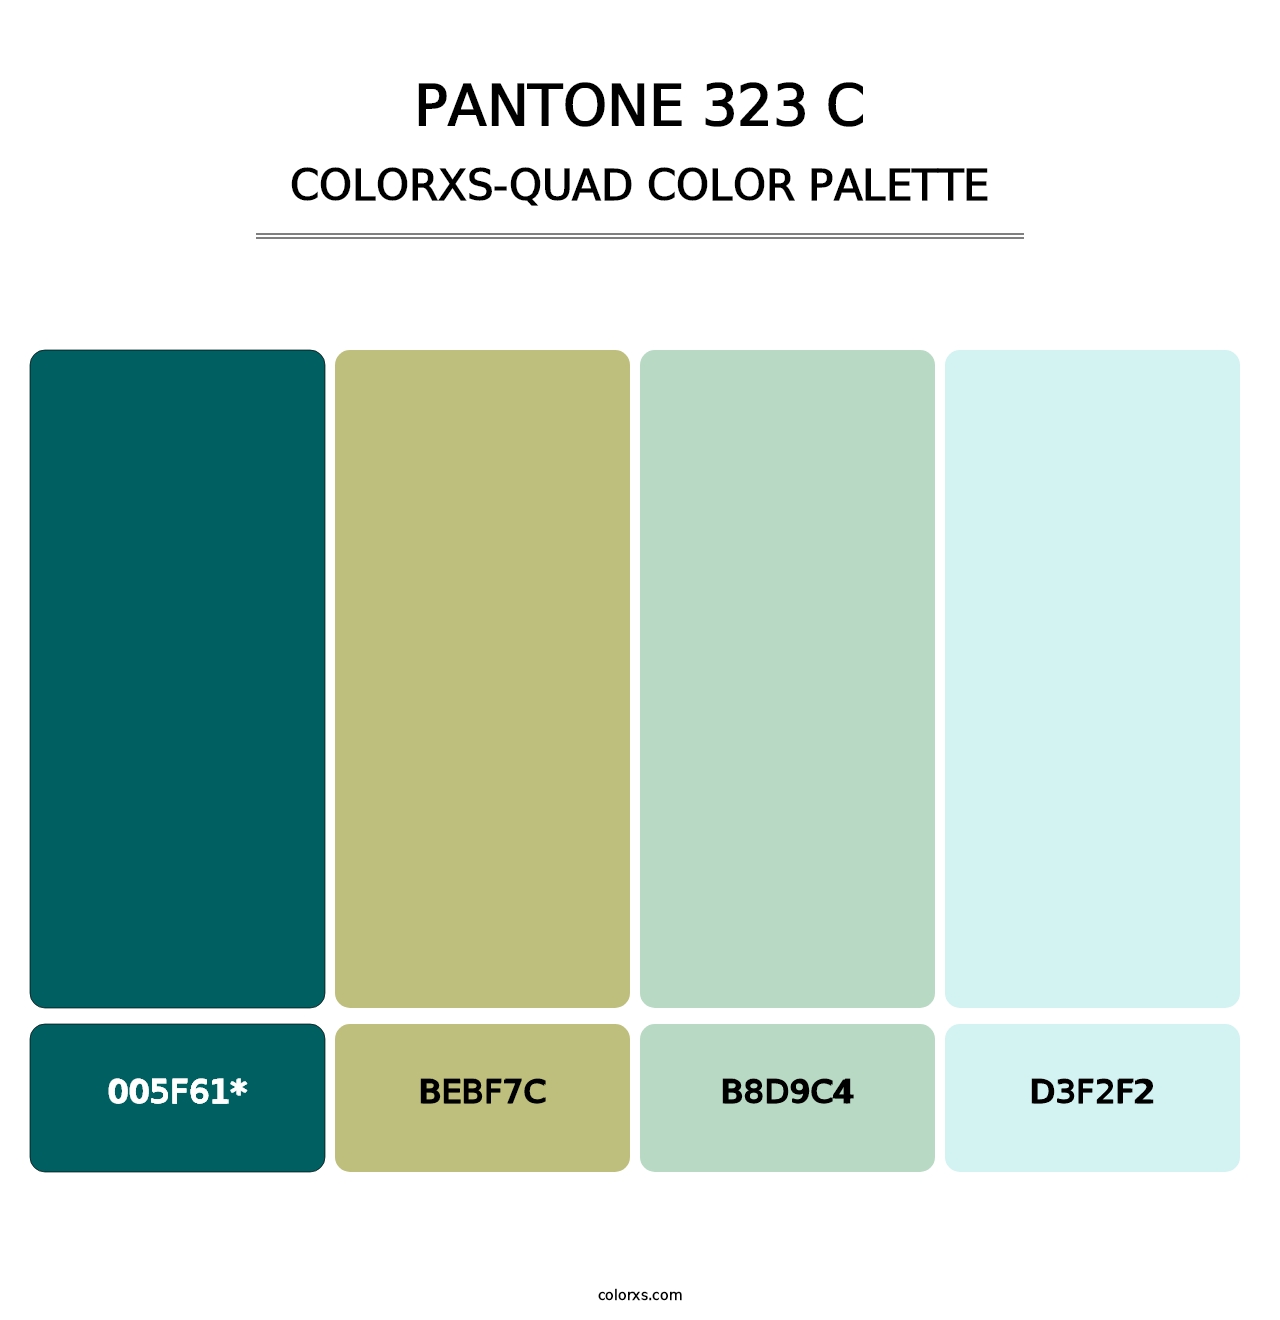 PANTONE 323 C - Colorxs Quad Palette